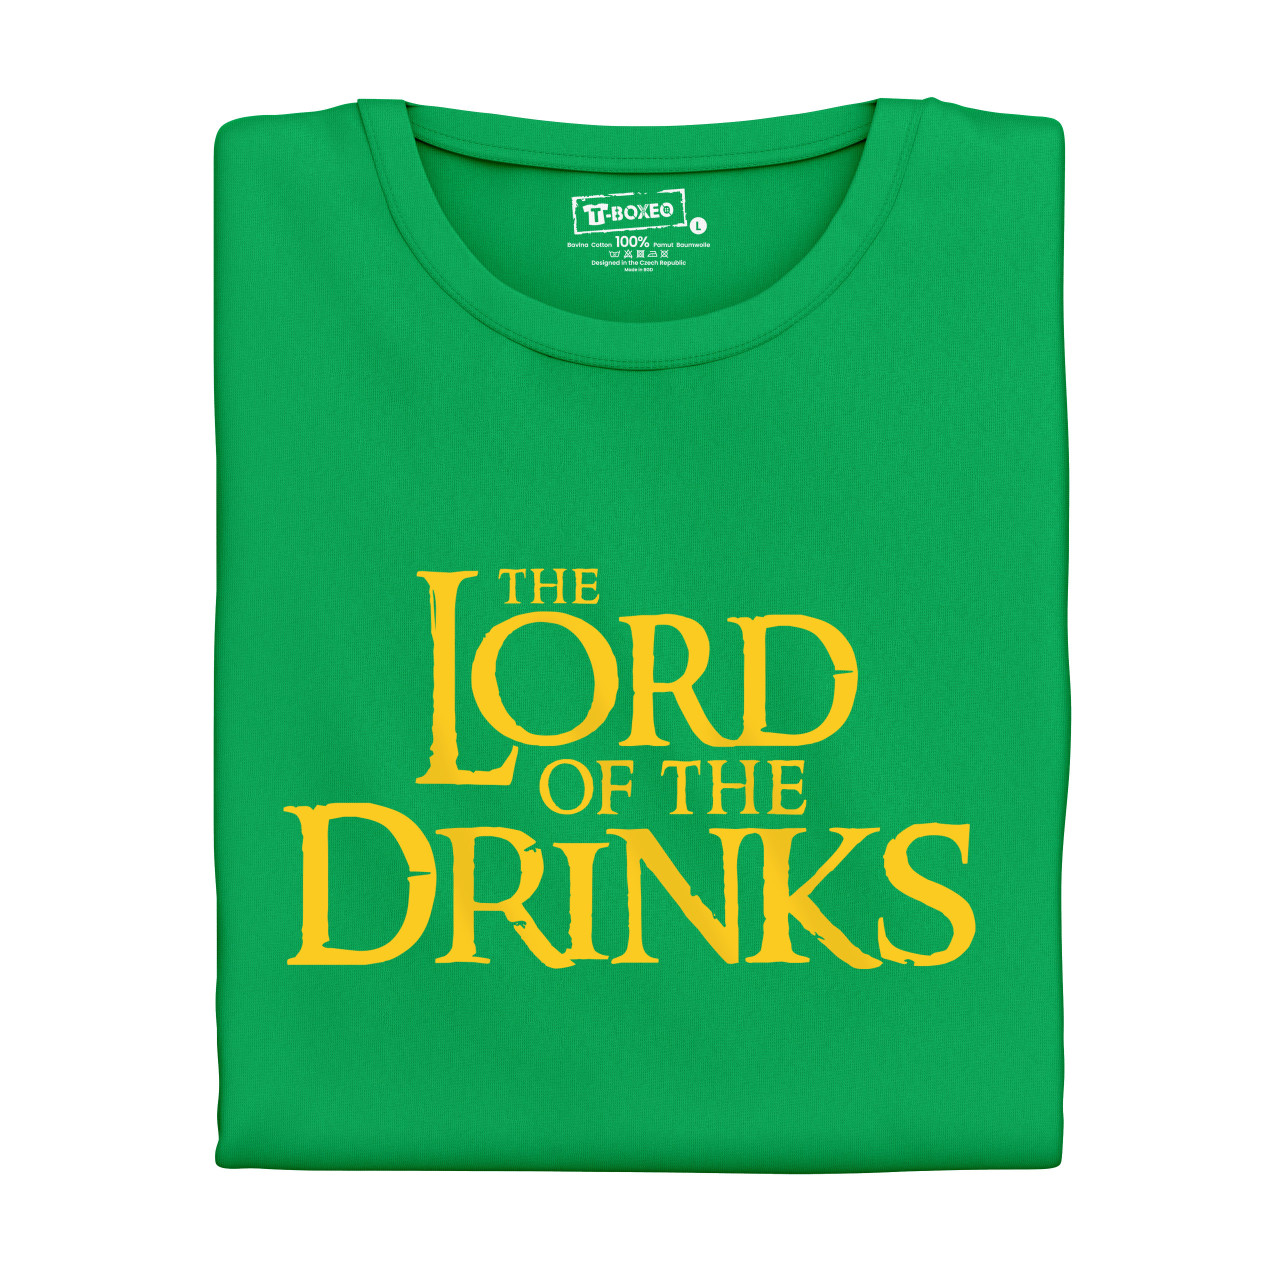 Pánské tričko s potiskem “Lord of the Drinks”